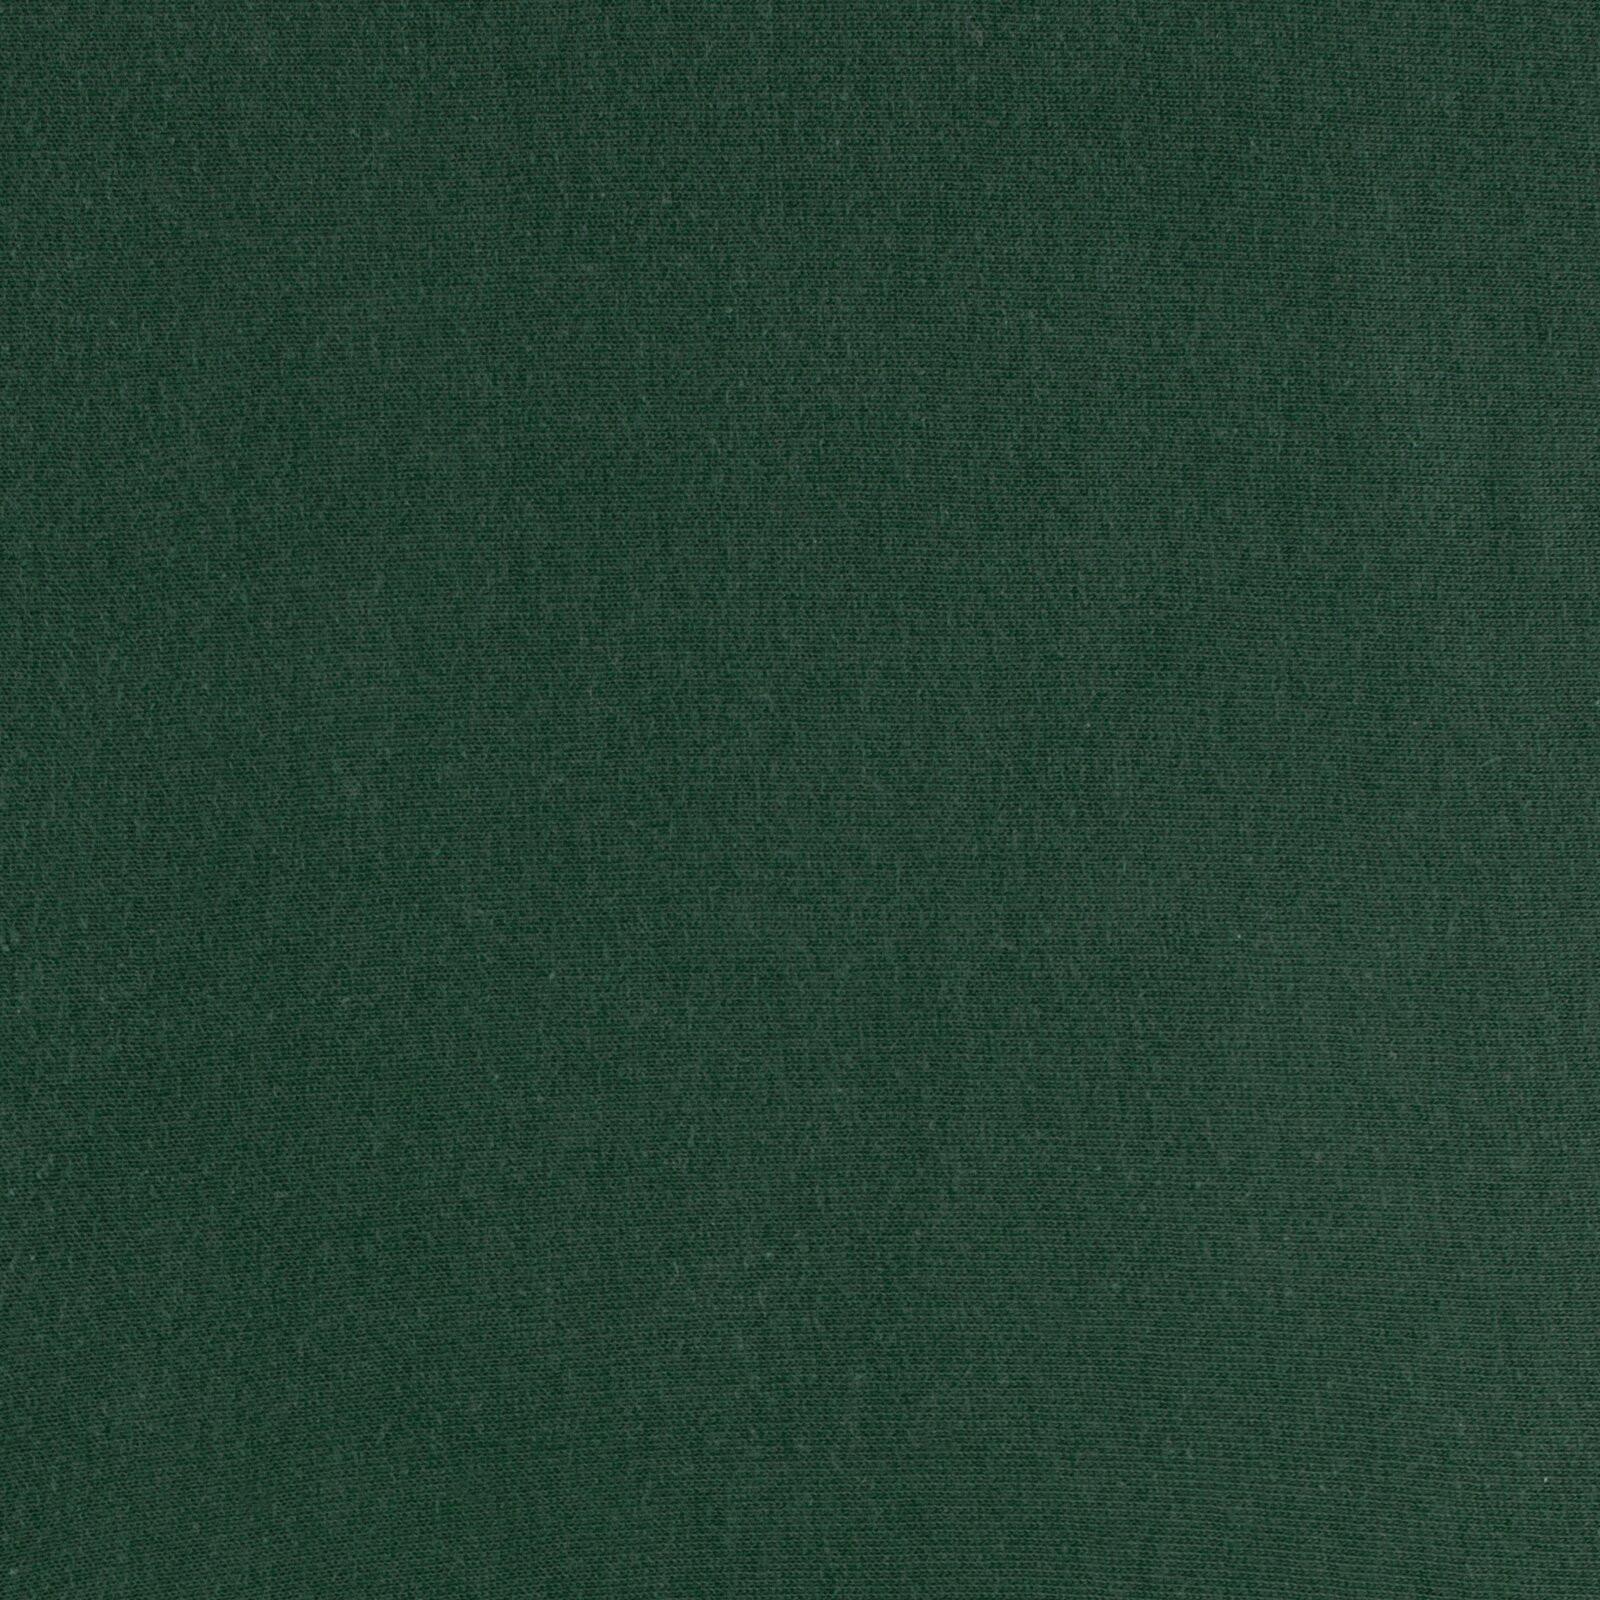 Plachta s gumičkou JERSEY D91 tmavě zelená